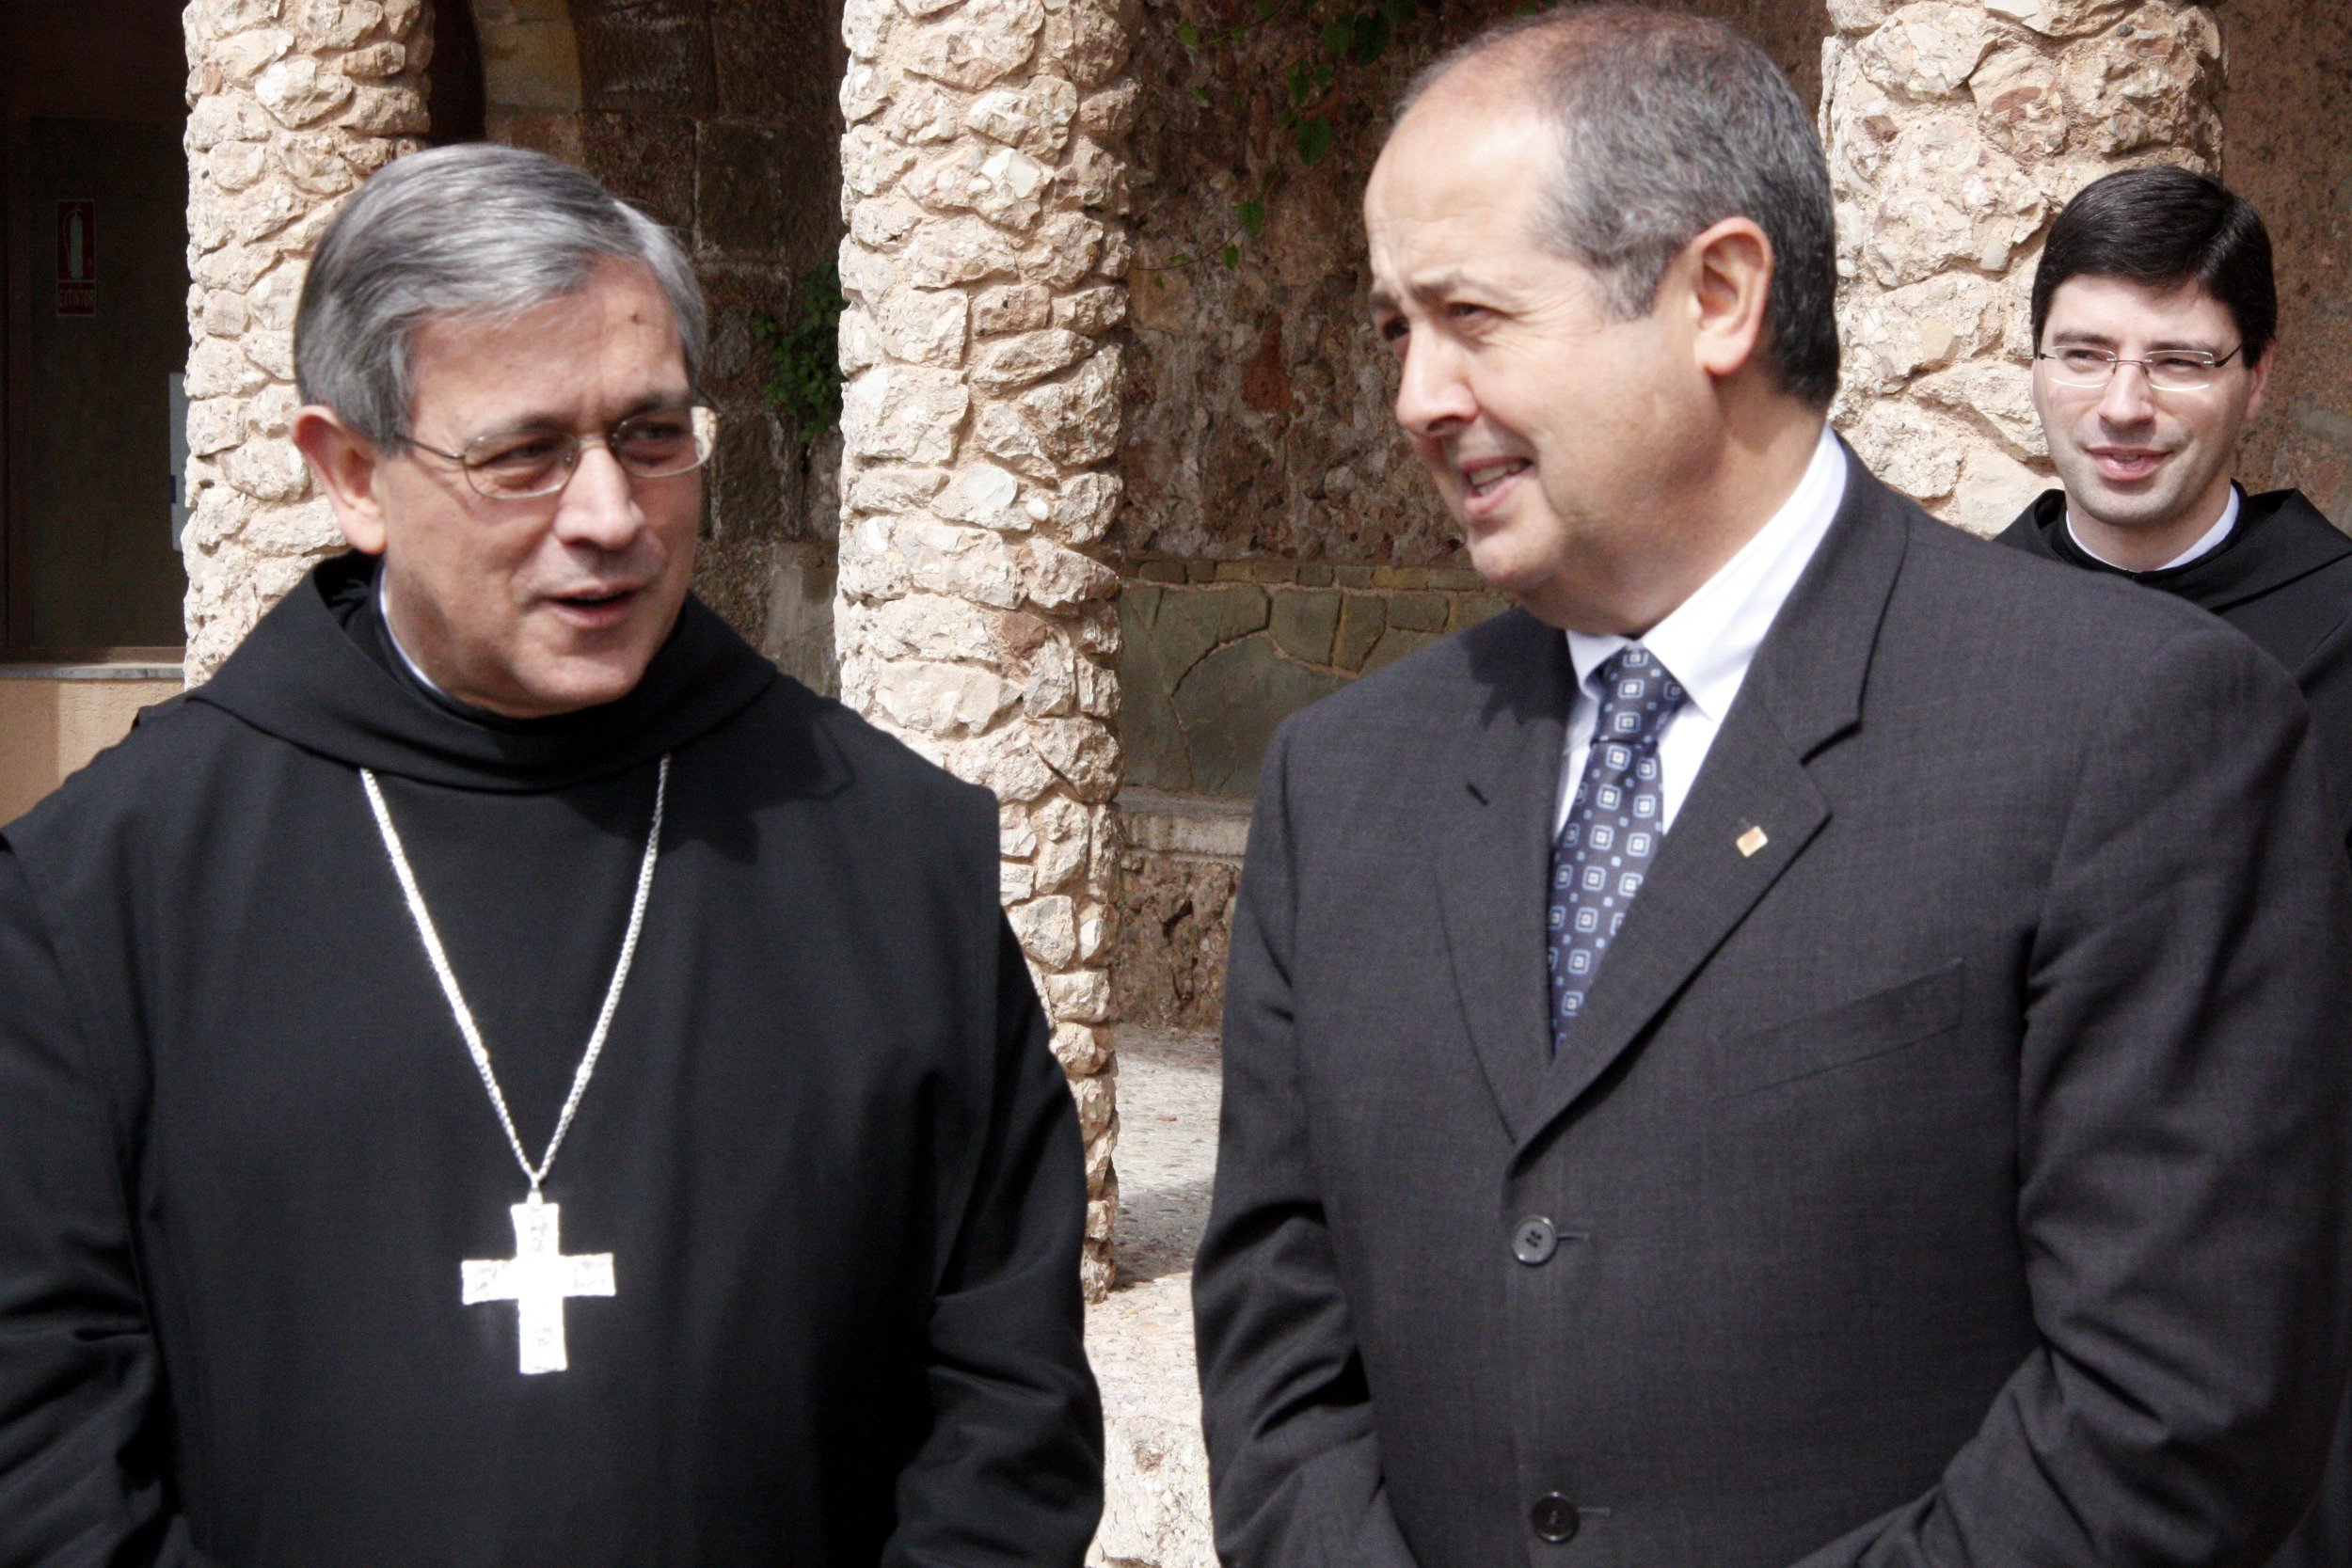 El abad de Montserrat: "Los encarcelamientos preventivos crean notable inquietud"